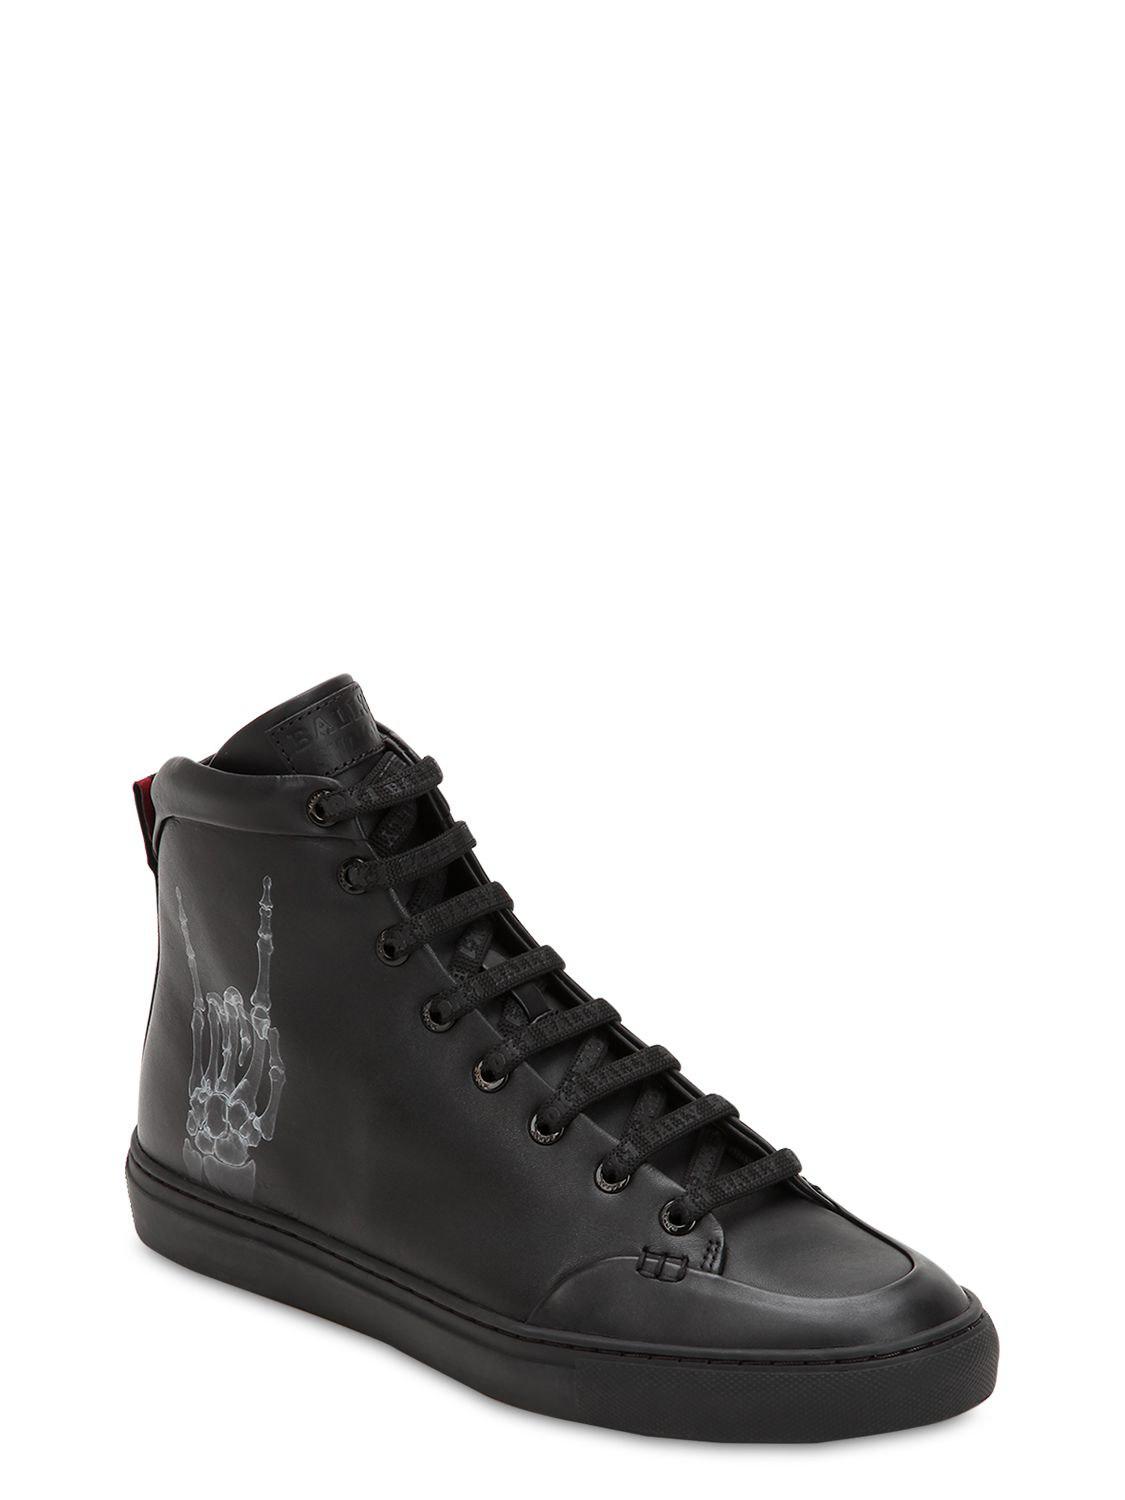 Bally Leather Shok-1 X Swizz Beatz Low Top Sneakers in Black for Men - Lyst